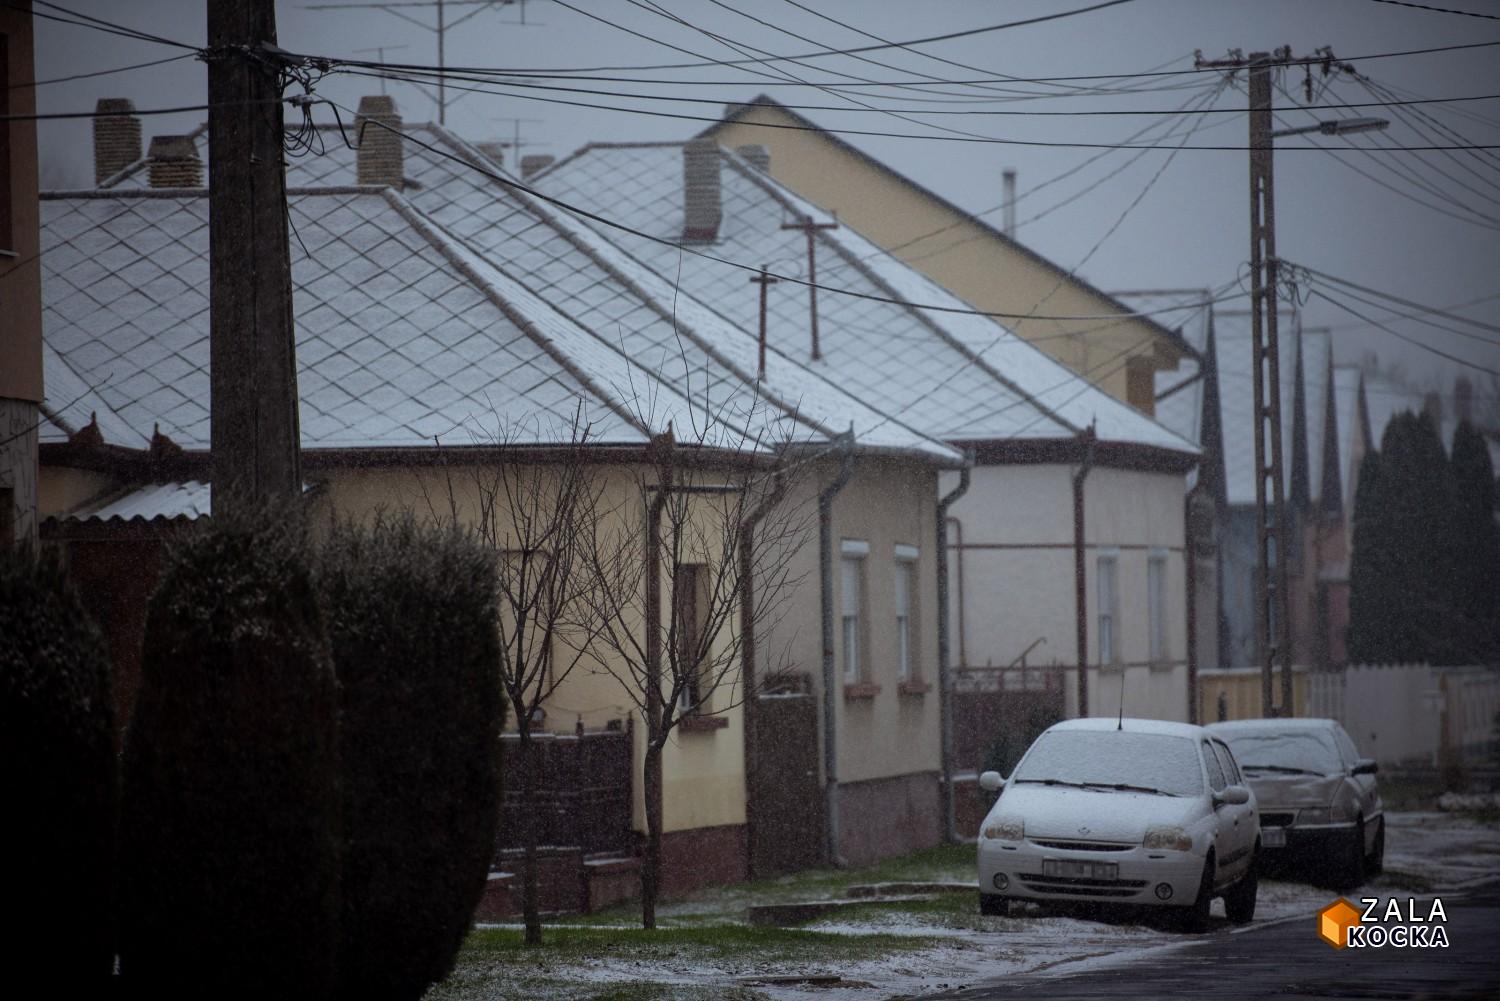 Megérkezett az első hó – így készül a télre a Netta-Pannonia